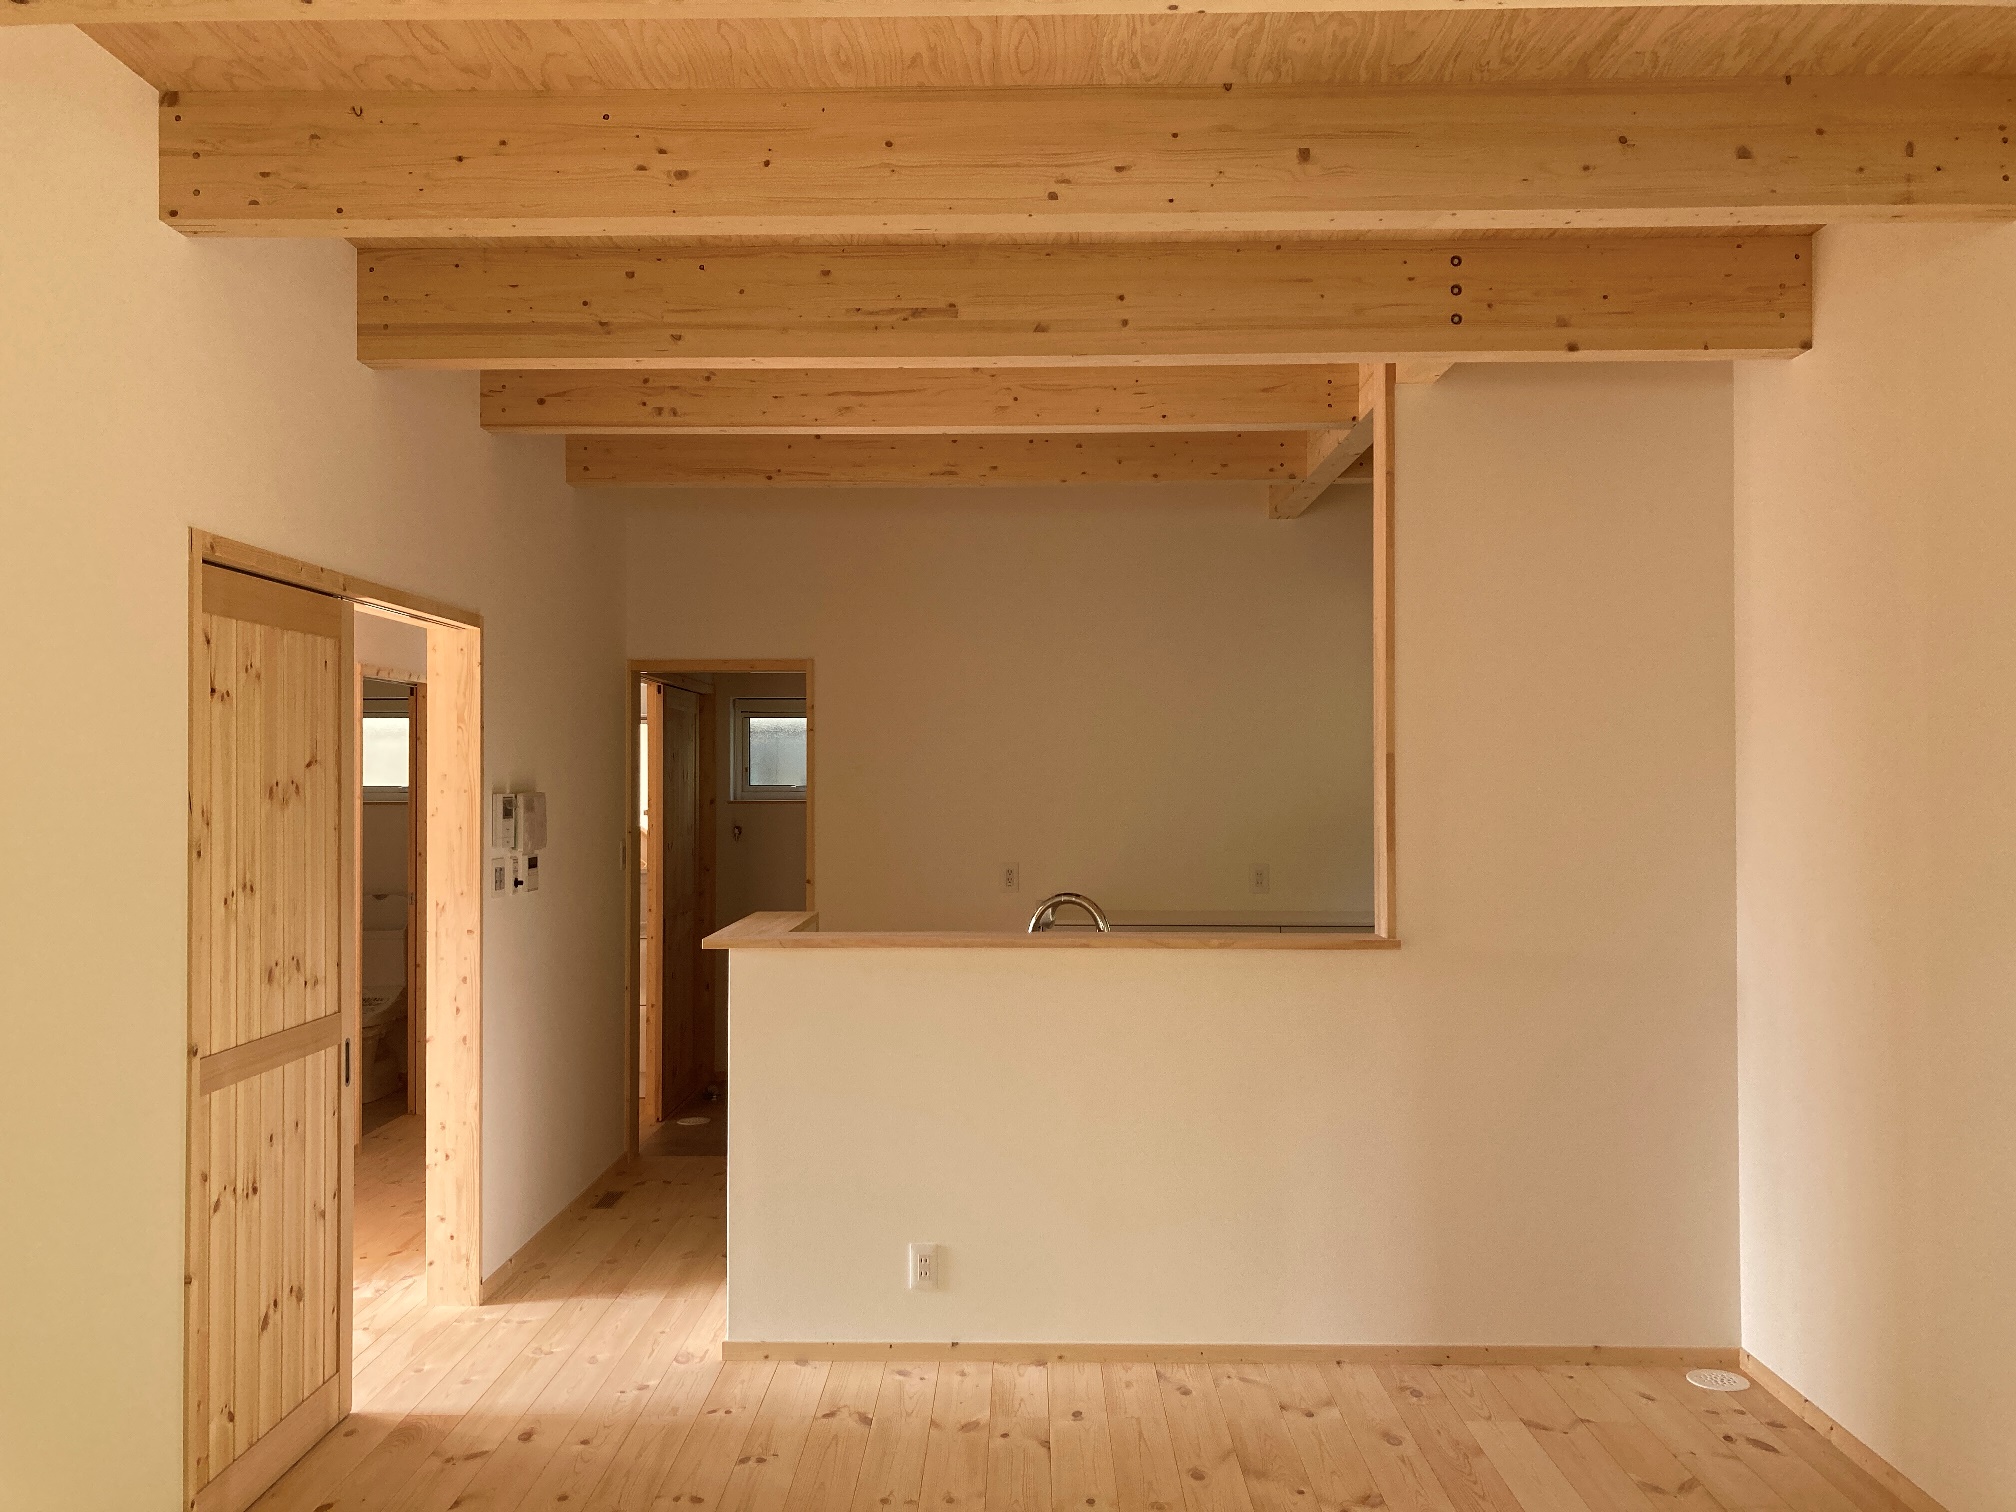 兵庫県加古川市で自然素材の家を考えている方へ、自然素材の家で使われる素材一覧